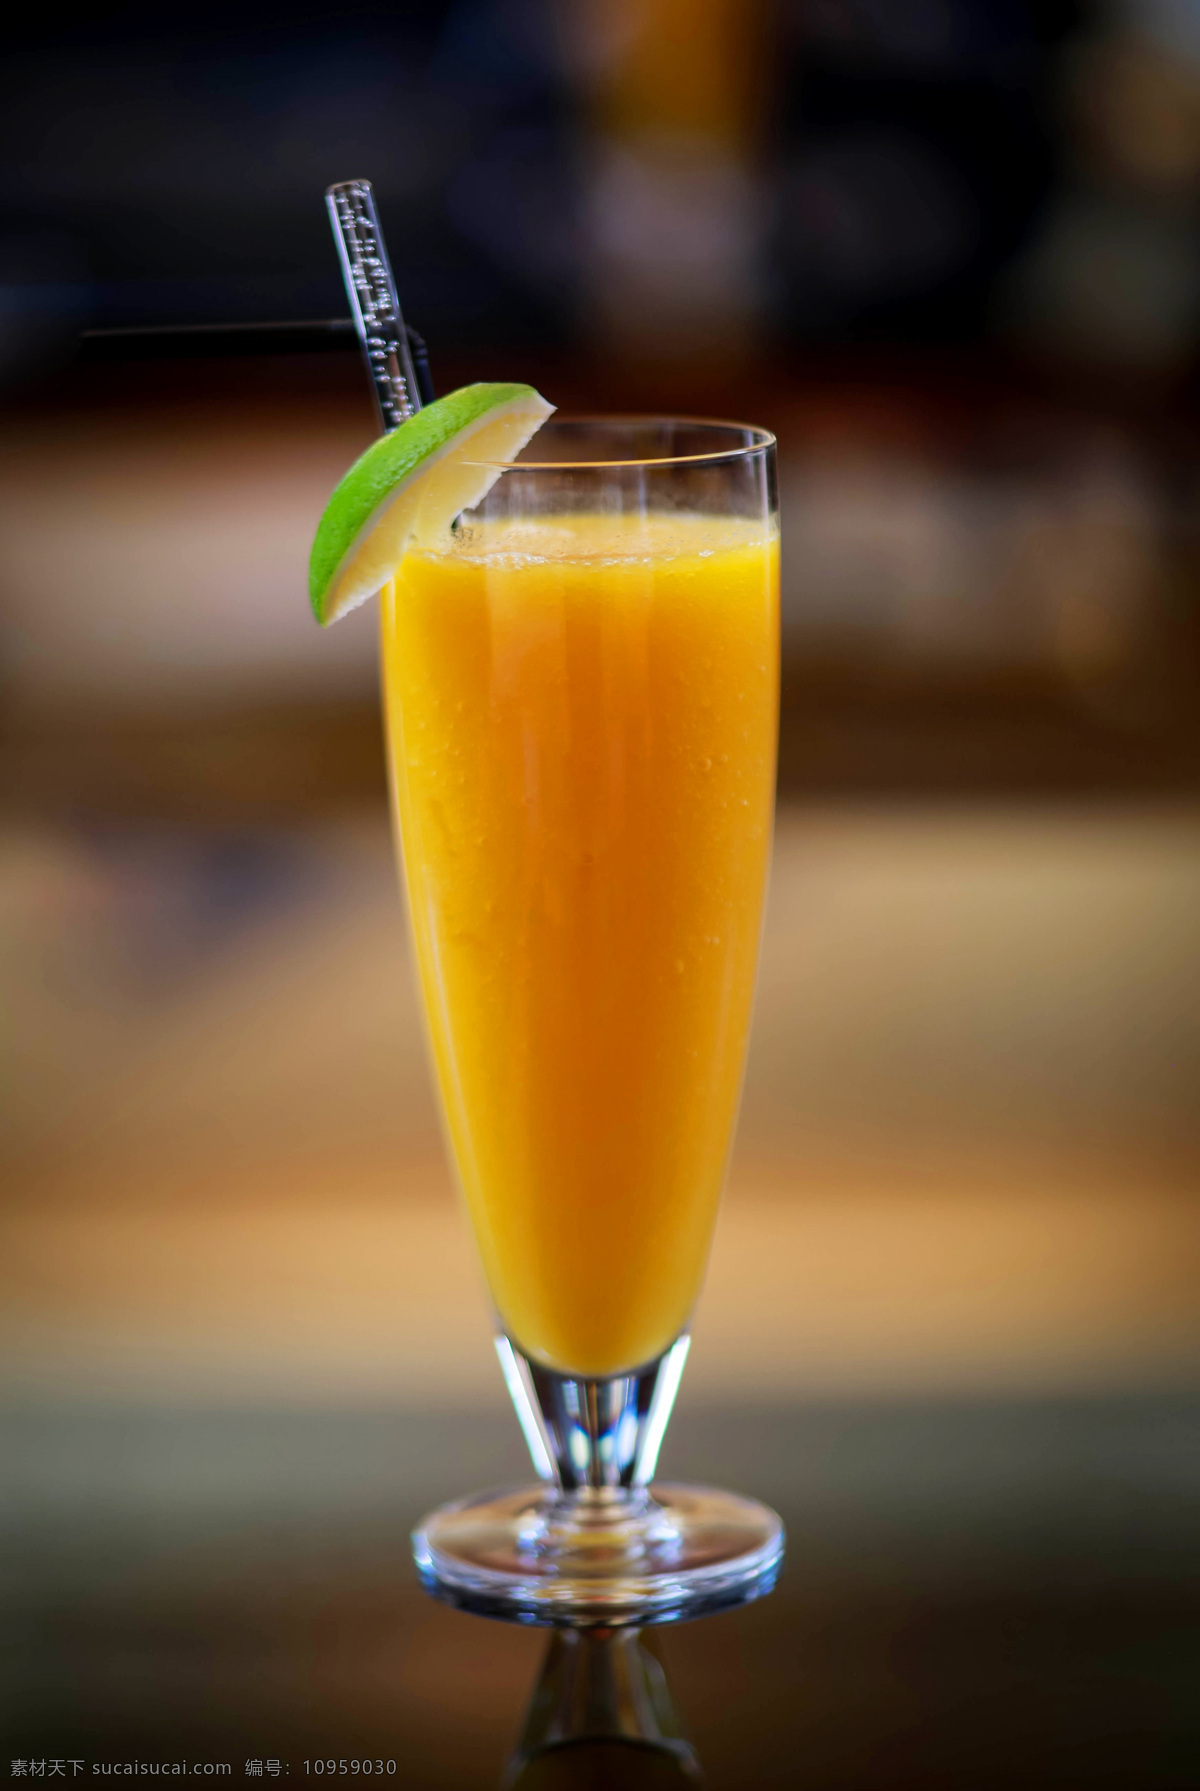 芒果汁 饮料 夏天 水果 果汁 凉爽 摄影素材 餐饮美食 饮料酒水